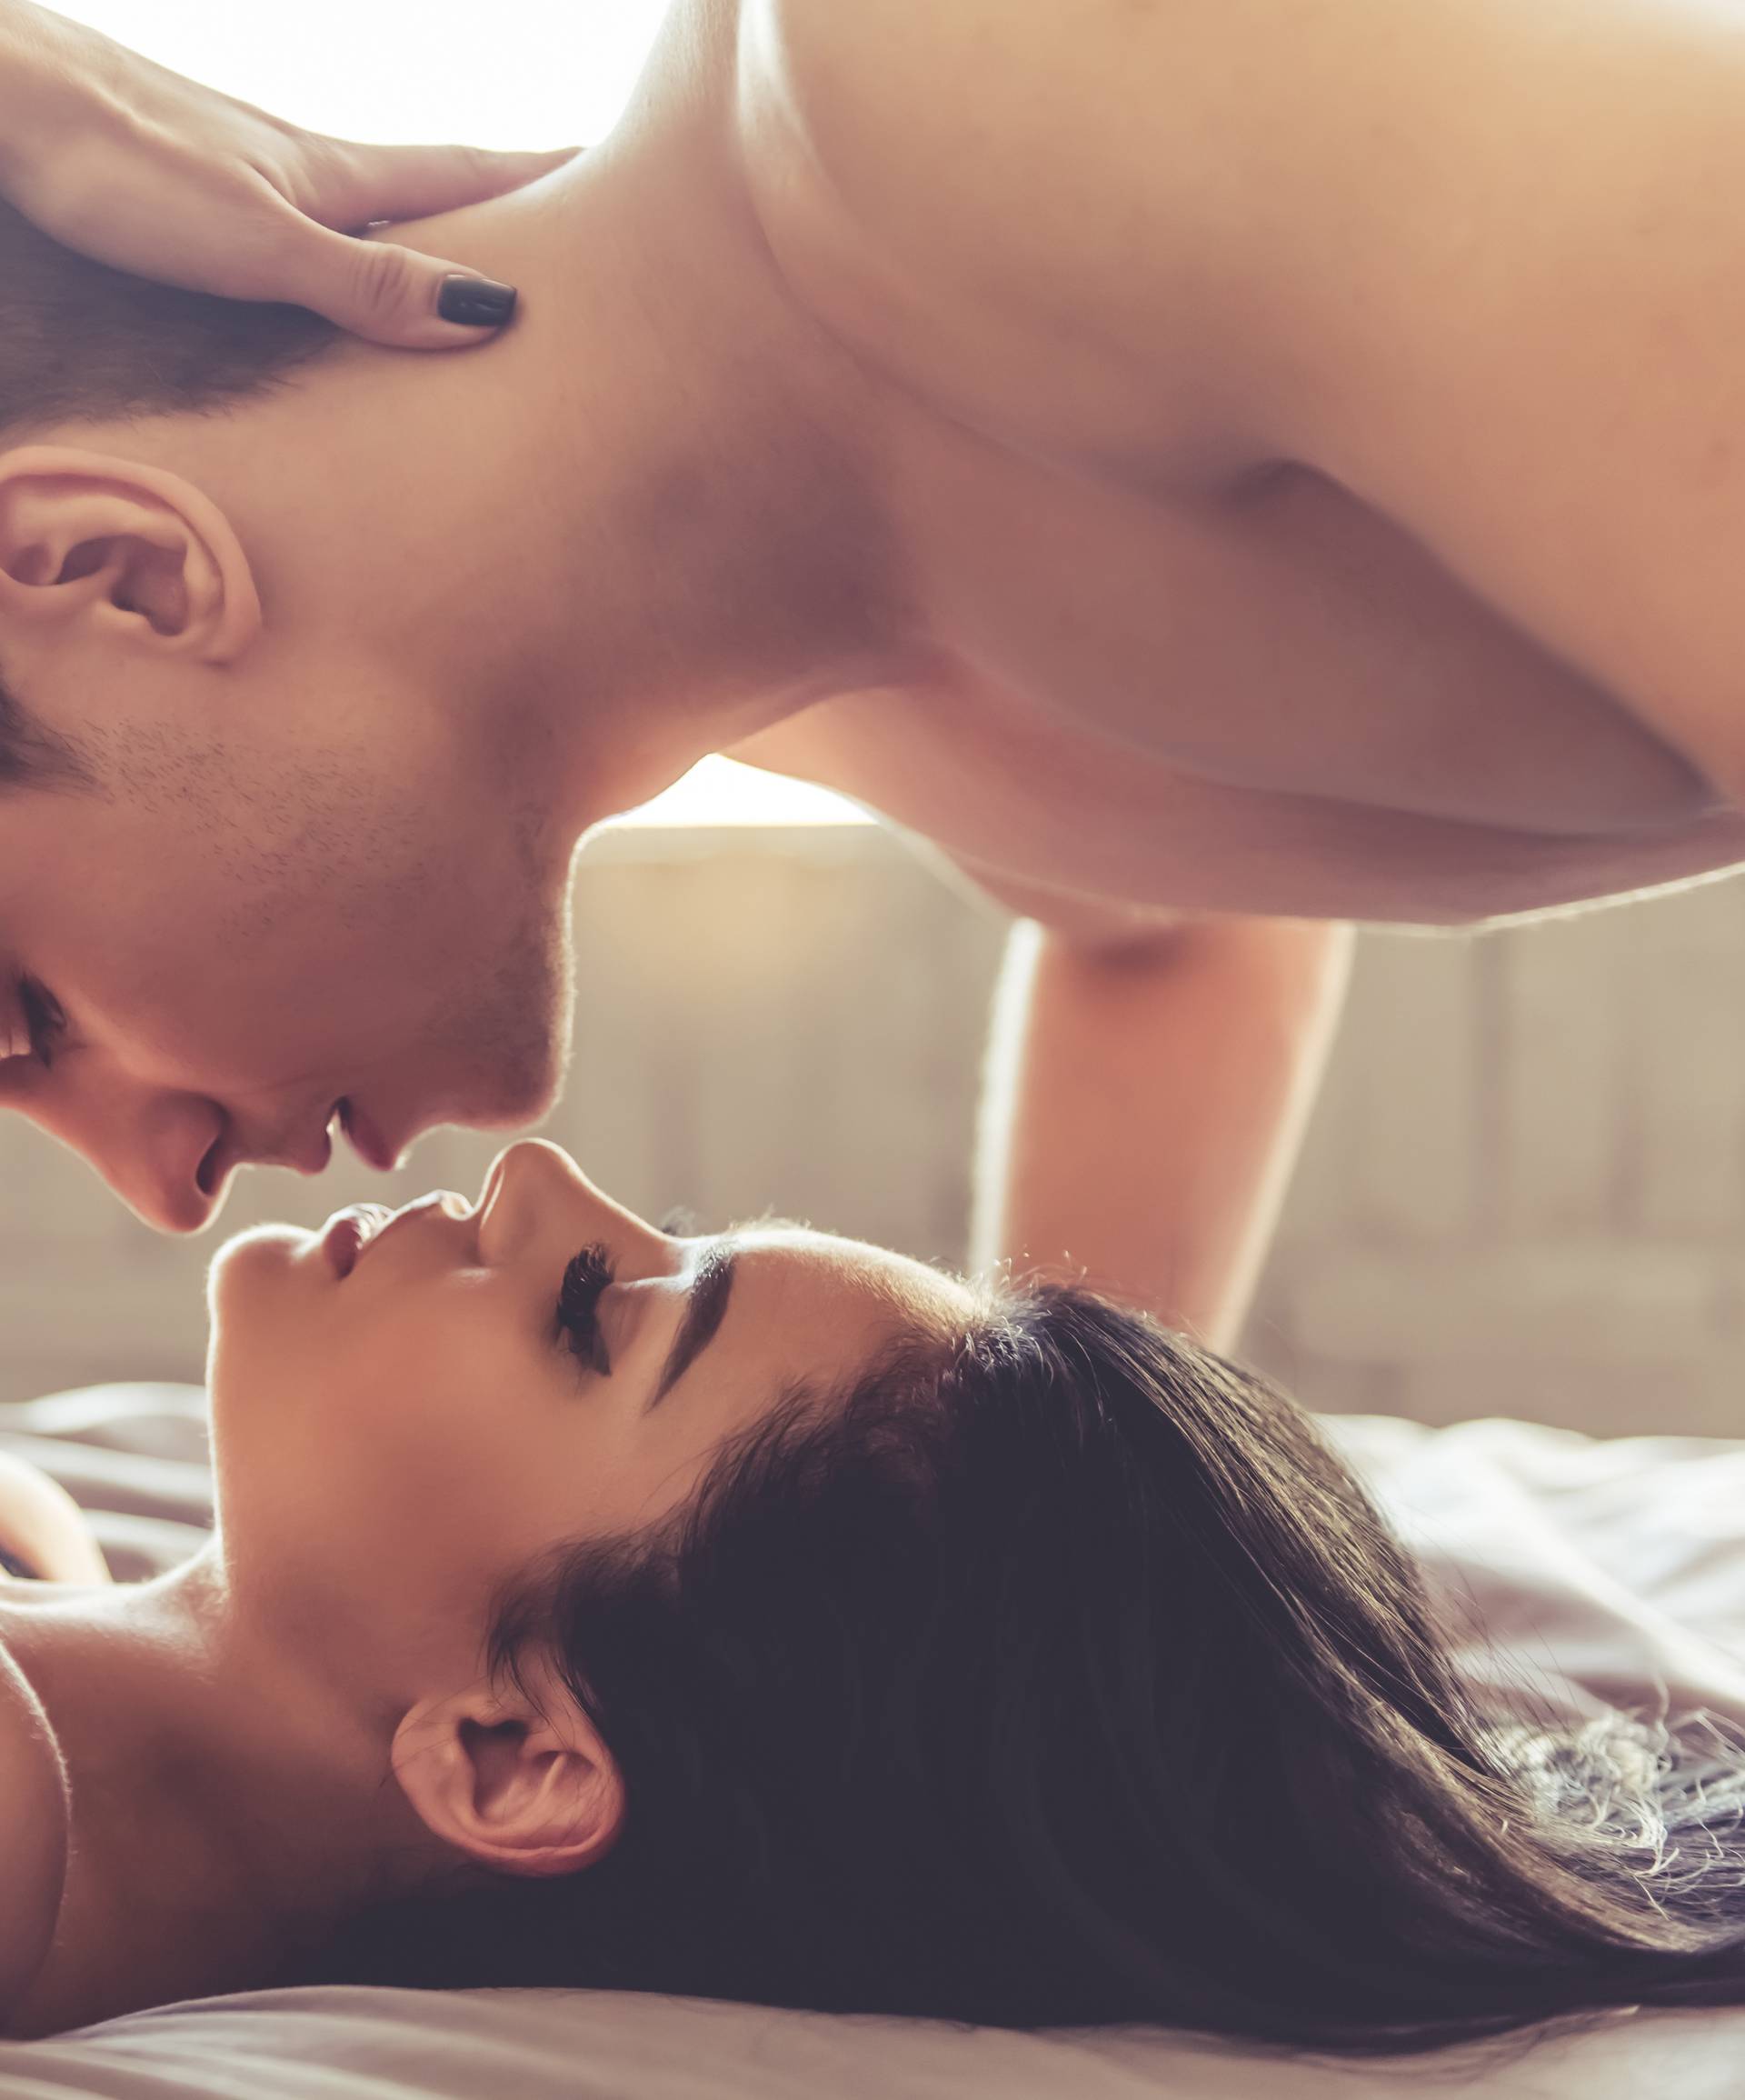 Igranje uloga u seksu: Ove igre vode vas u svijet senzualnosti